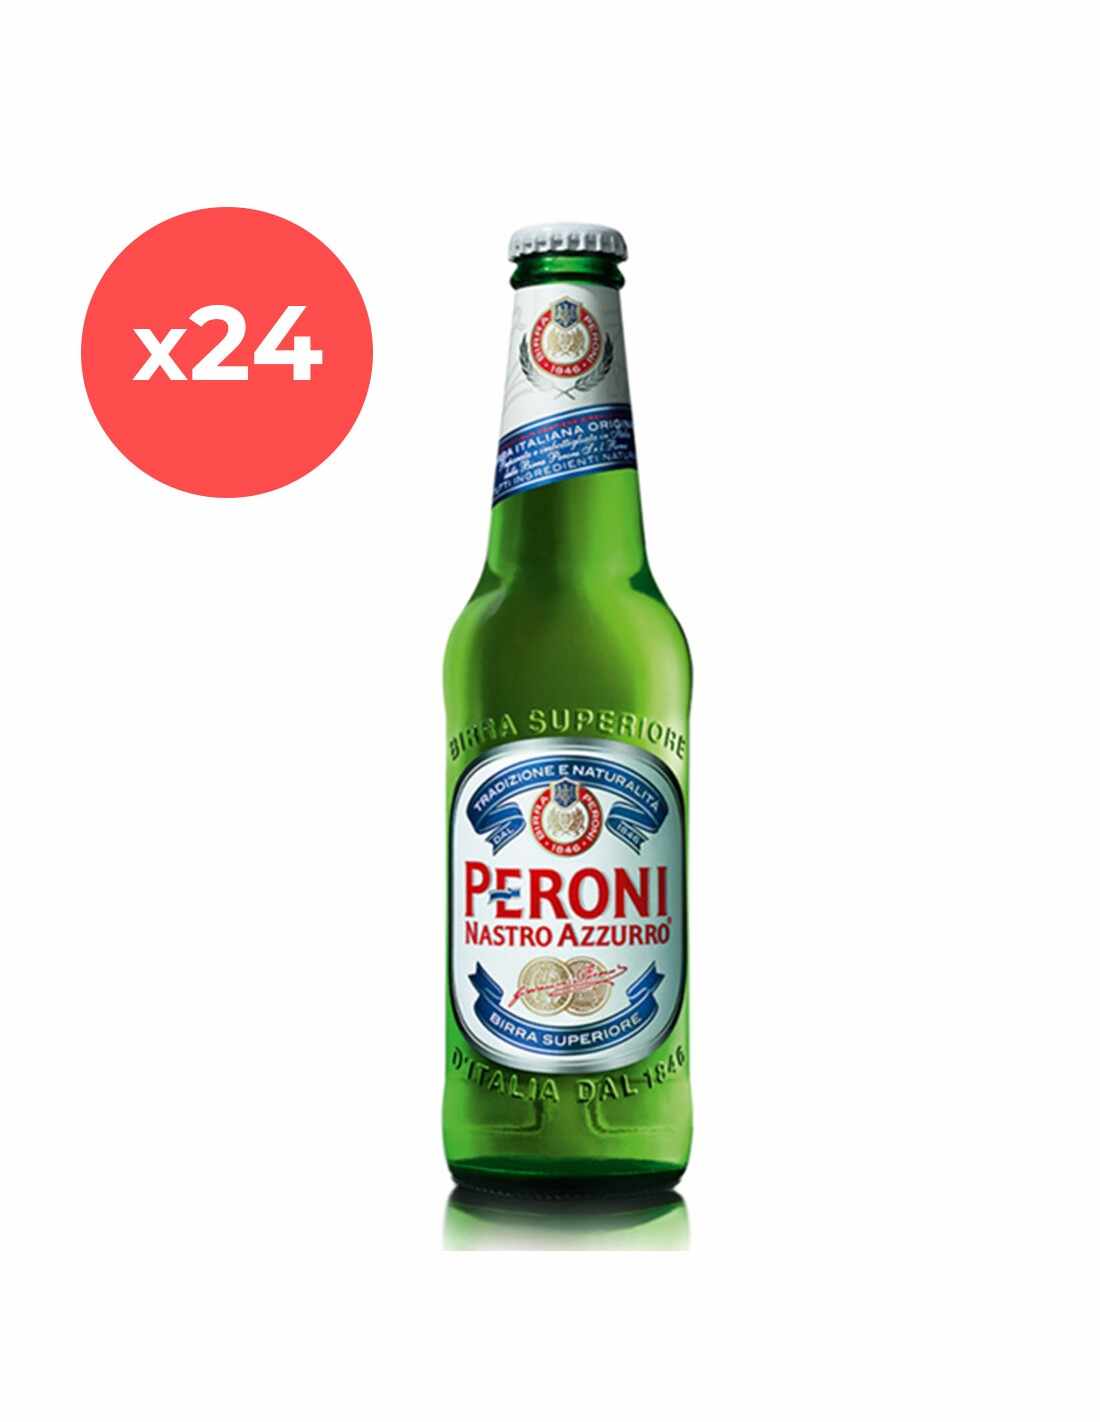 Bax 24 bucati bere blonda, filtrata Peroni Nastro, 5.1% alc., 0.33L, sticla, Italia